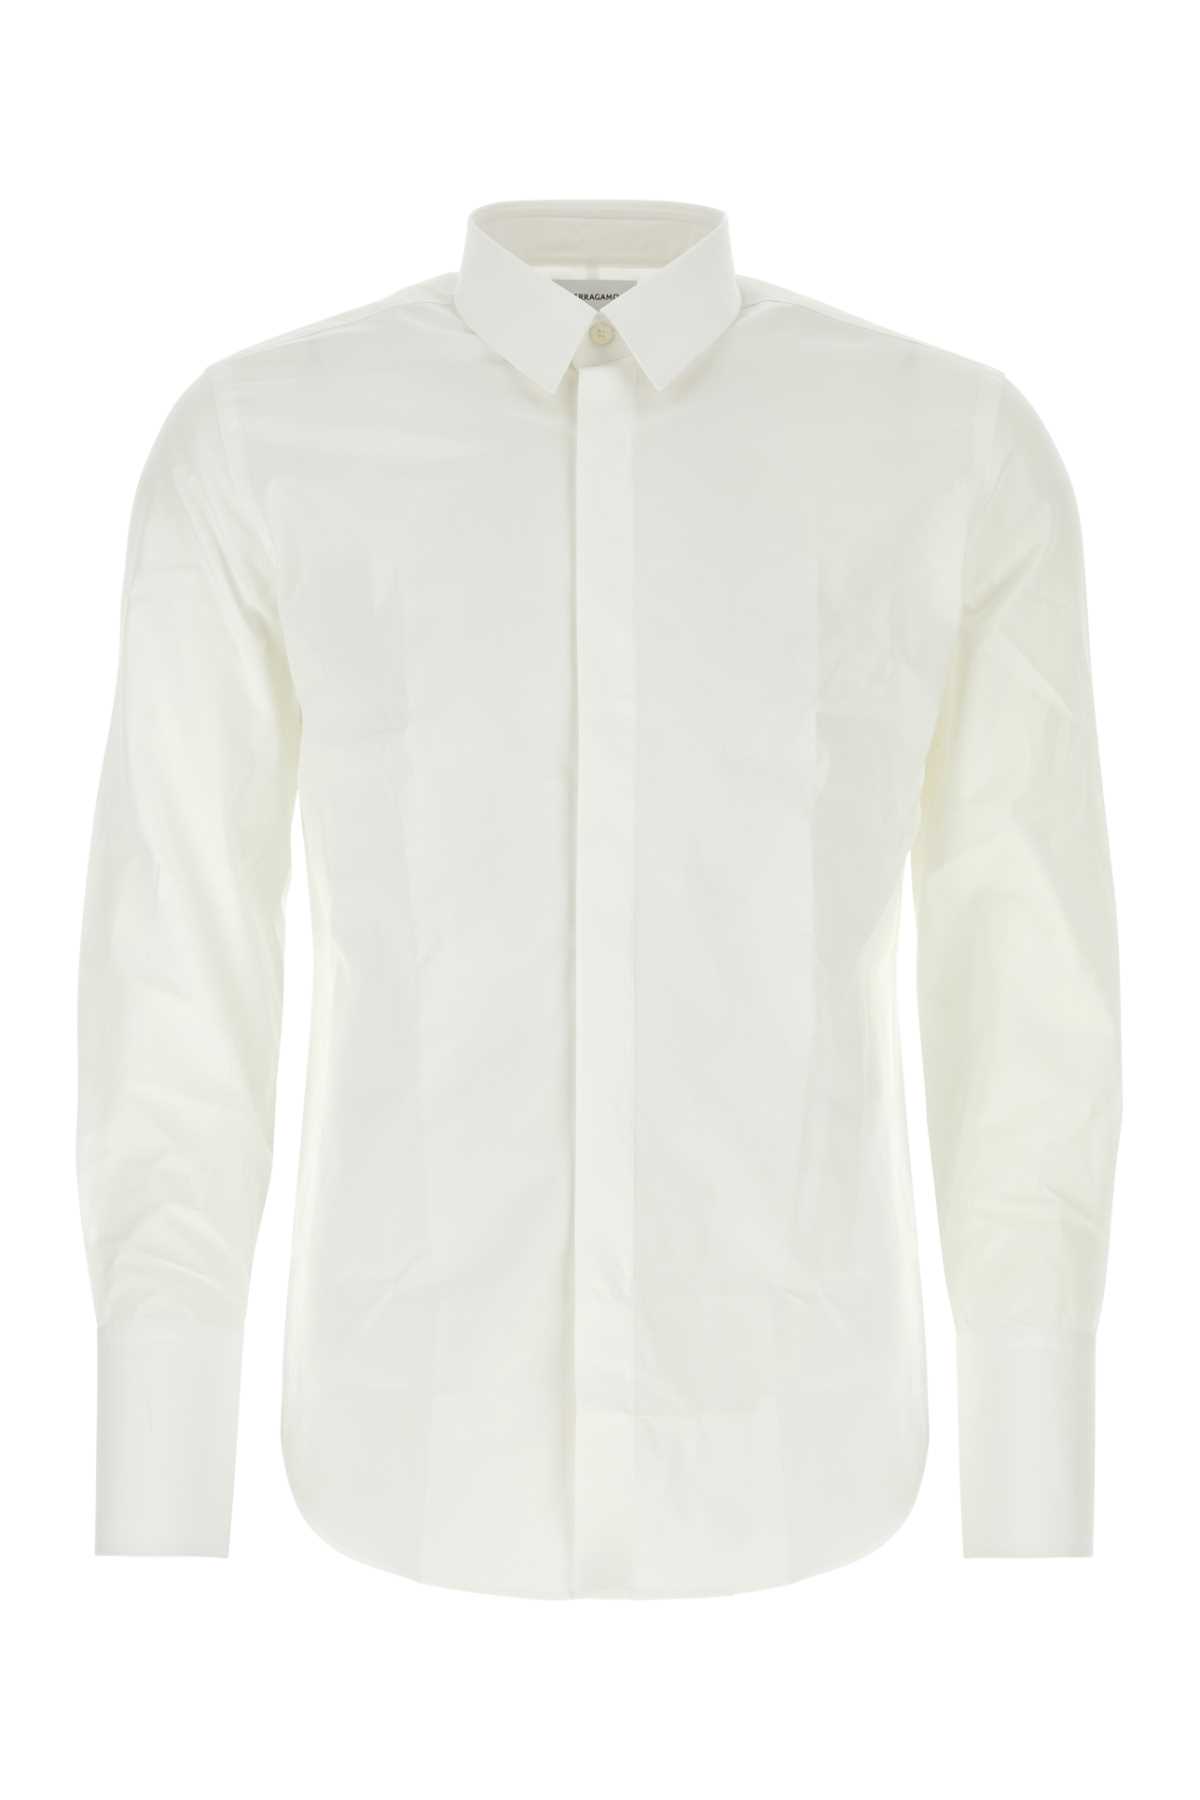 Shop Ferragamo White Poplin Shirt